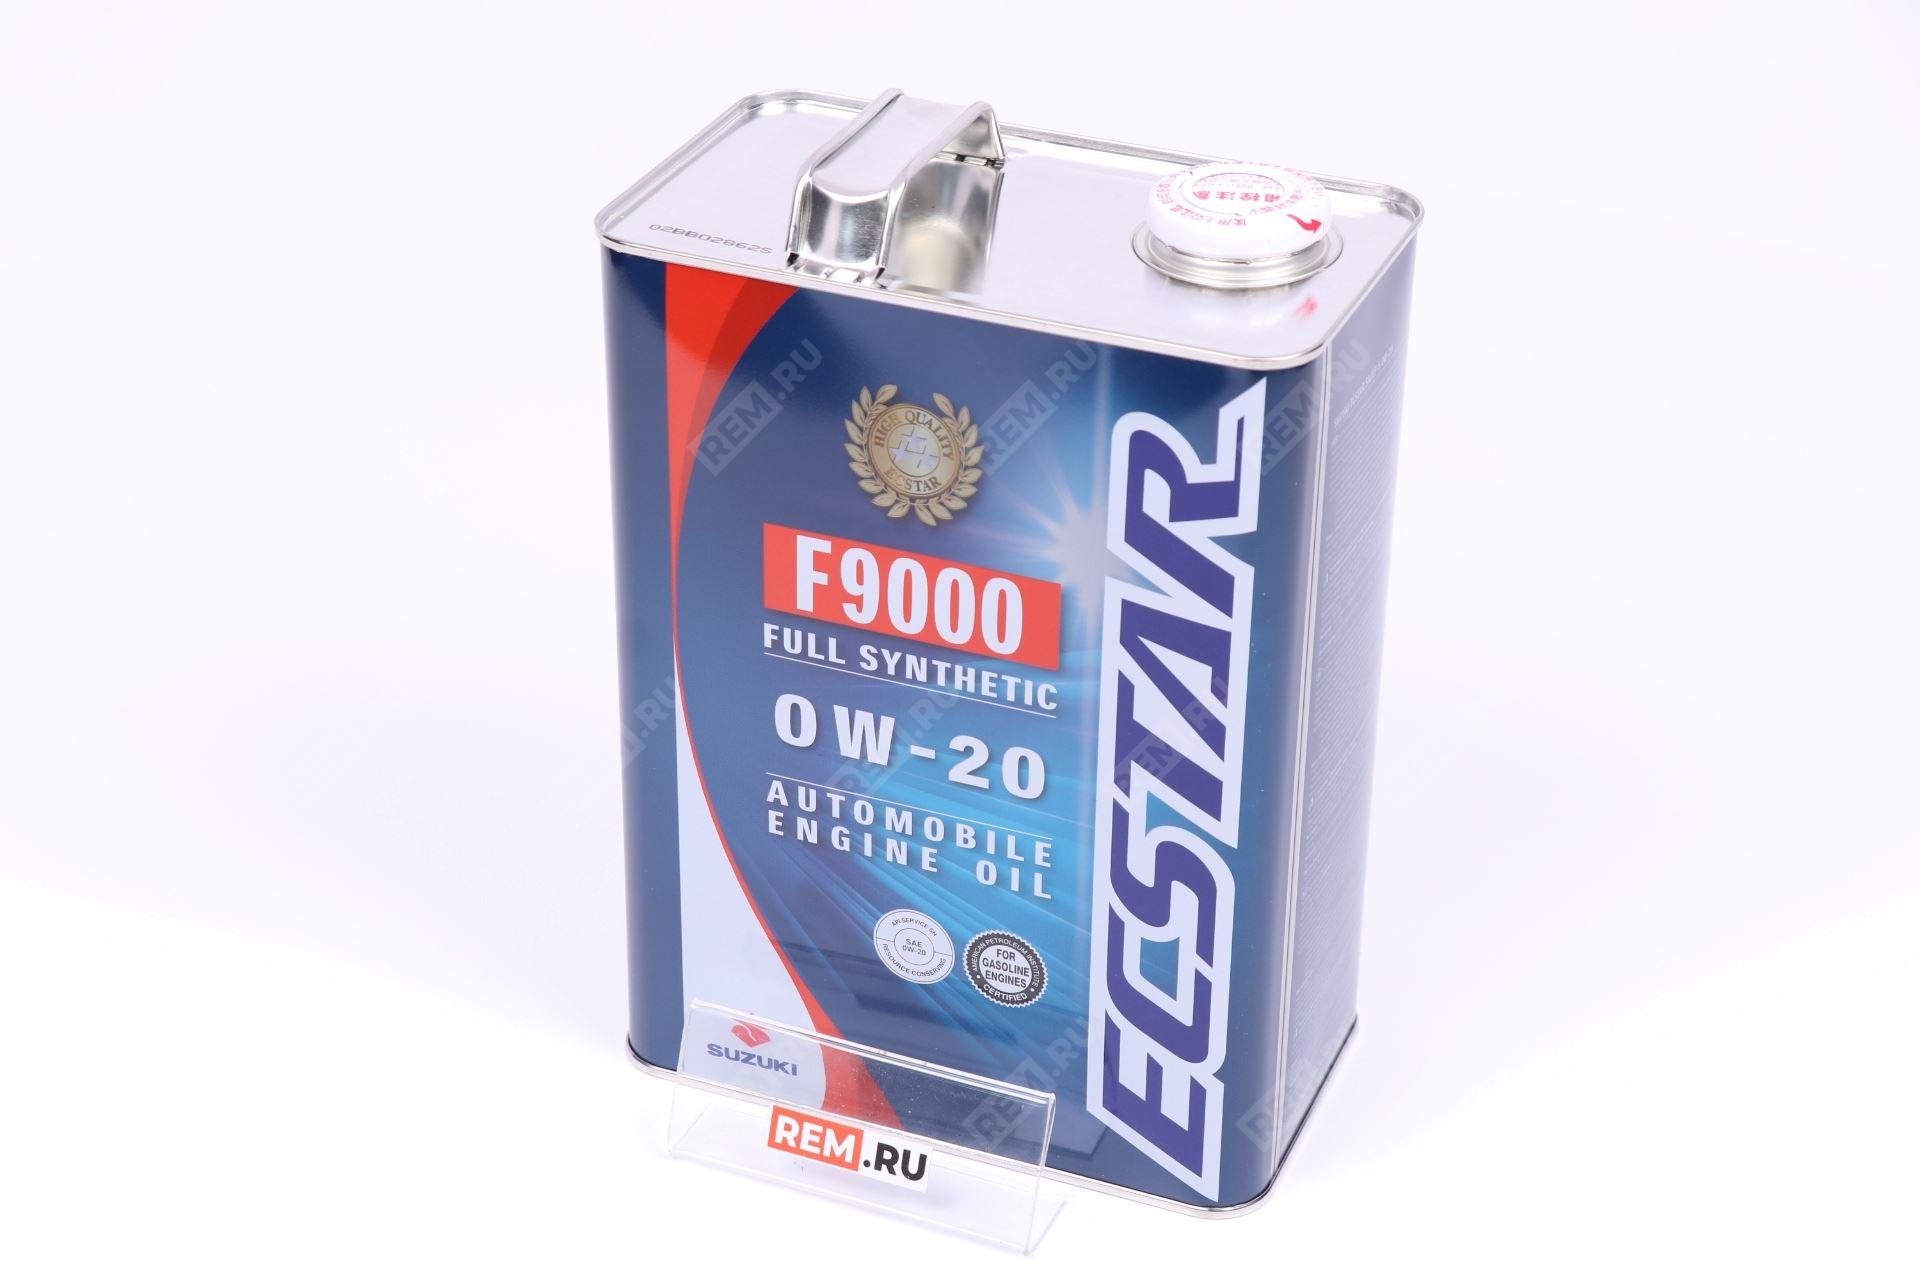  99M0022R01004  масло моторное suzuki f9000 ecstar 0w-20, 4л (фото 3)